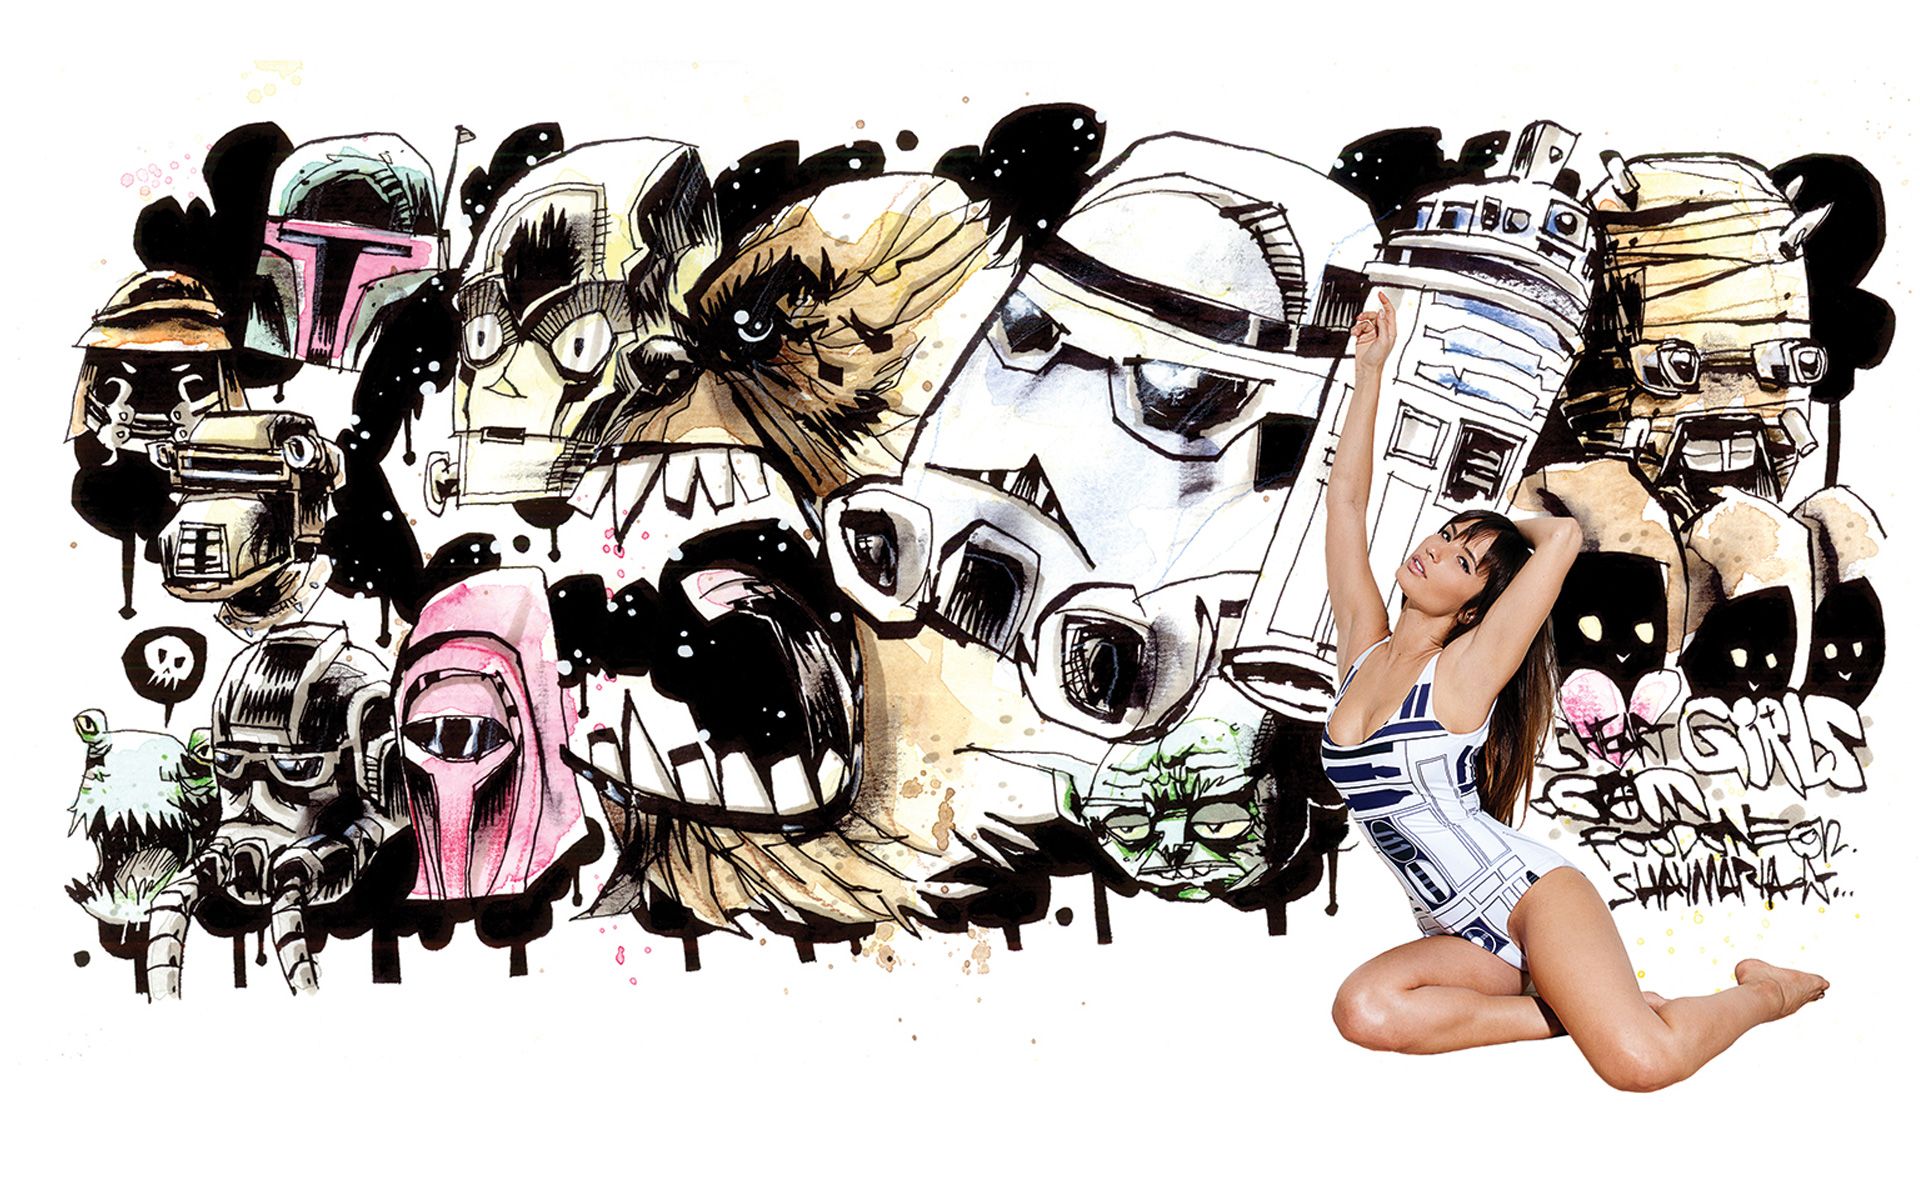 Jim Mahfood Hearts Girls and Star Wars: Shay Maria Wallpaper